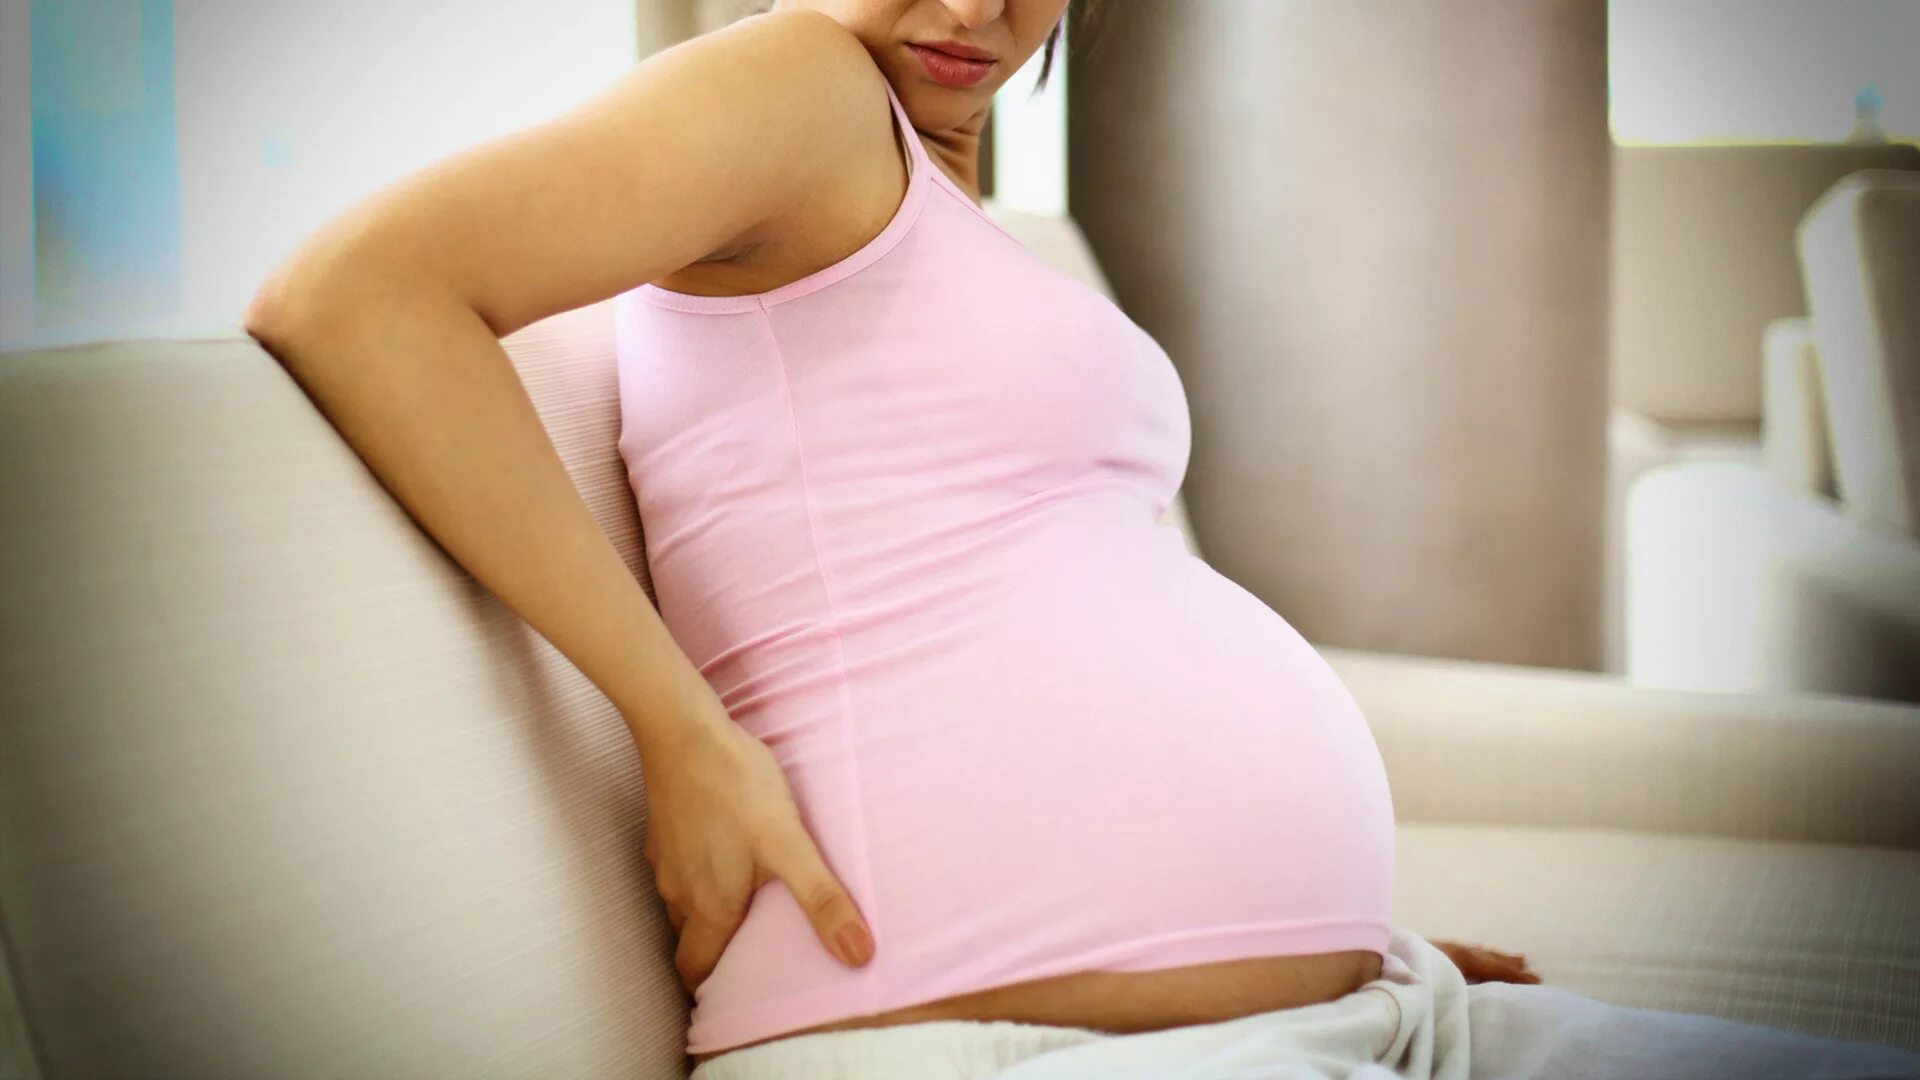 Фото роды беременной. Беременная. Схватки у беременных женщин. Фотосессия перед родами. Беременная перед родами.